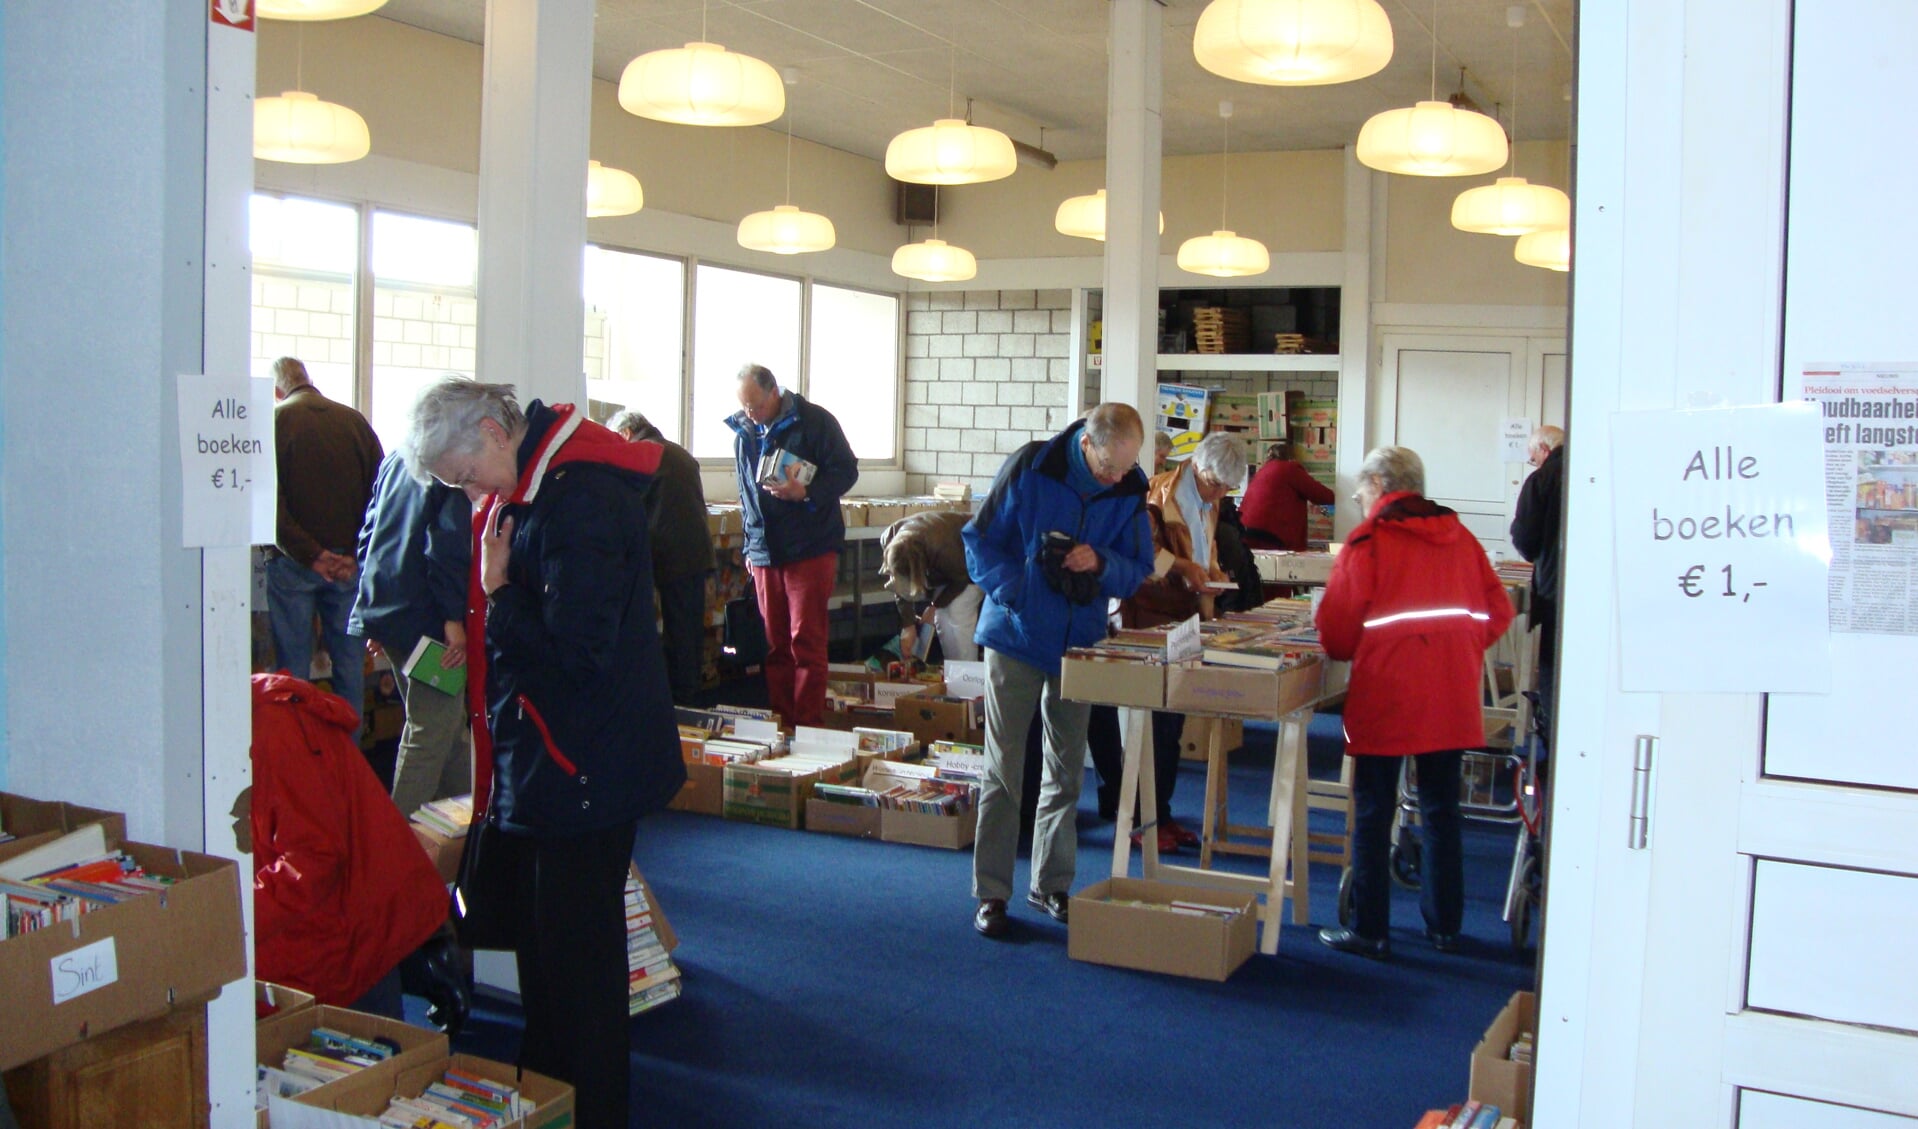 De boekenmarkt wordt al 5 jaar georganiseerd door de Marktdag De Bilt. Meer info: op www.marktdagdebilt.nl